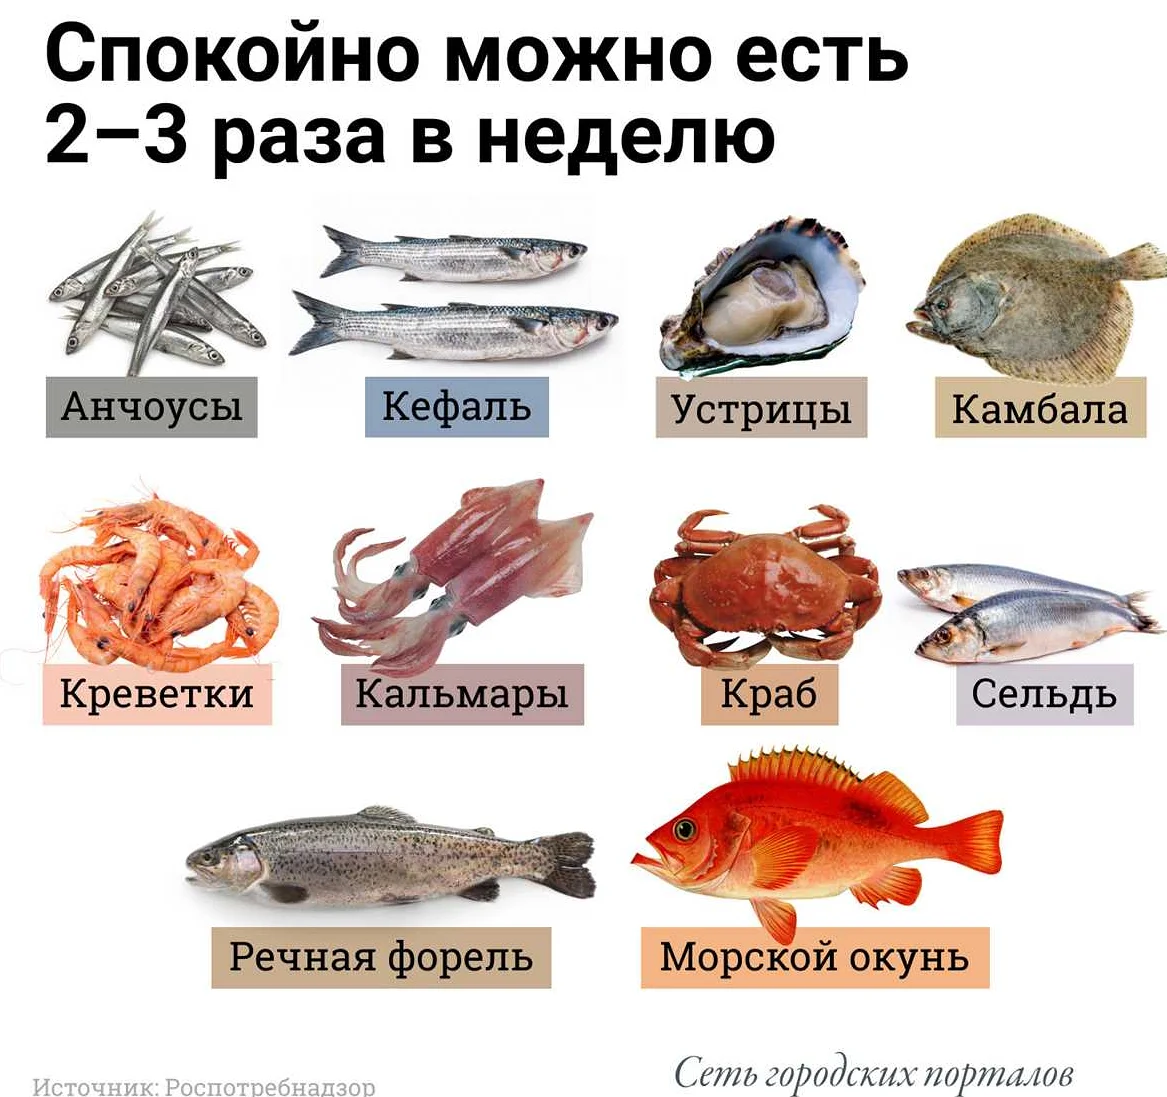 Рекомендации по употреблению соленой рыбы при диете